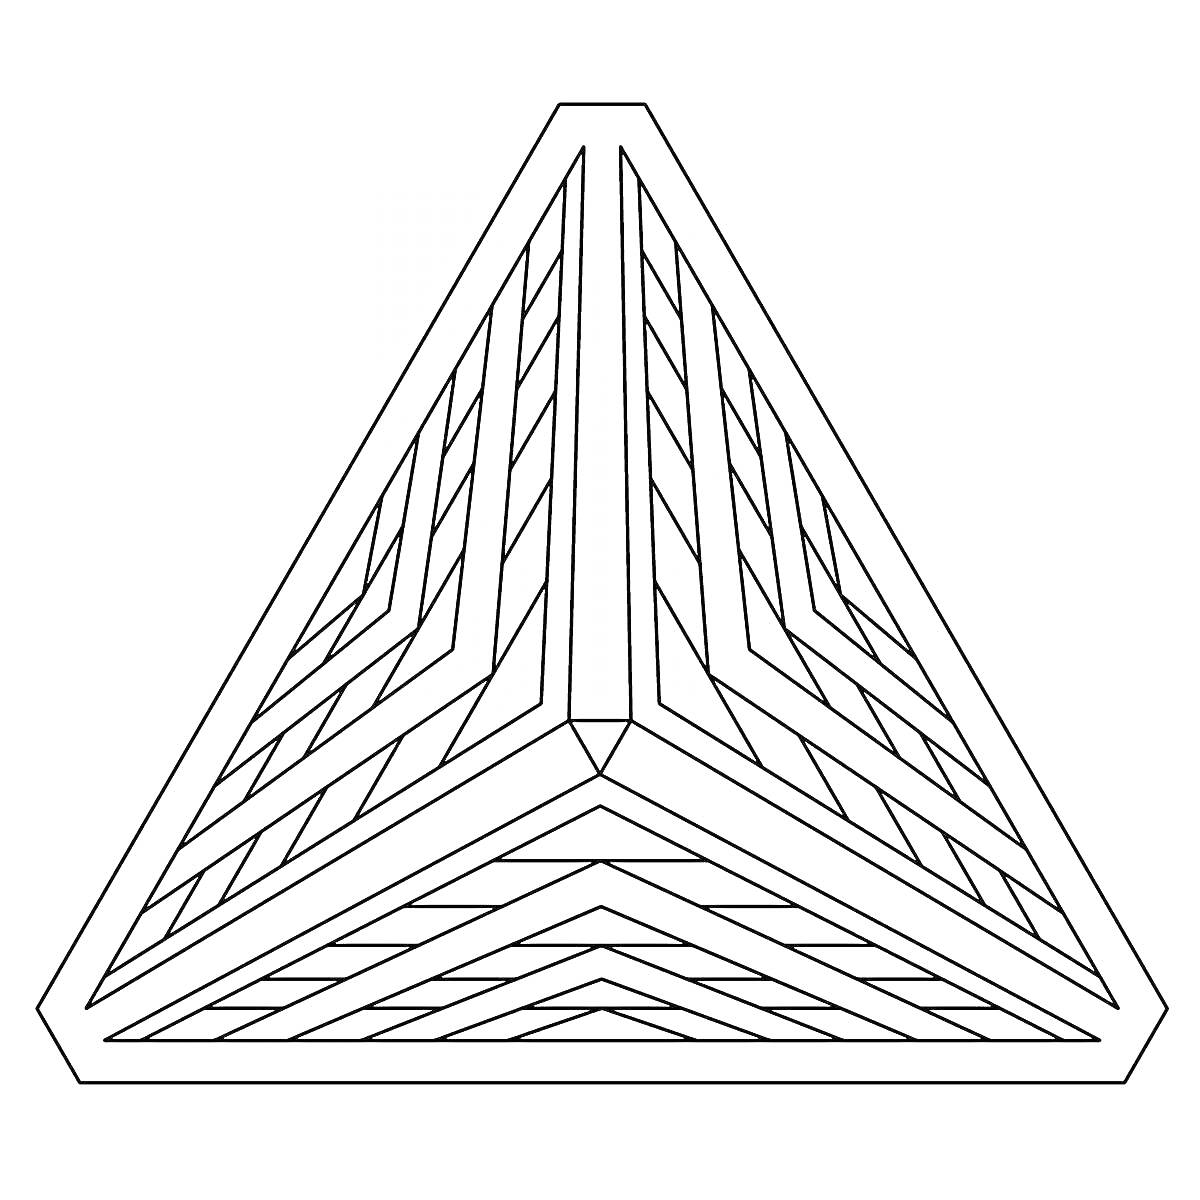 Раскраска 3D геометрическая форма, восьмиугольная симметрия с узорчатыми линиями